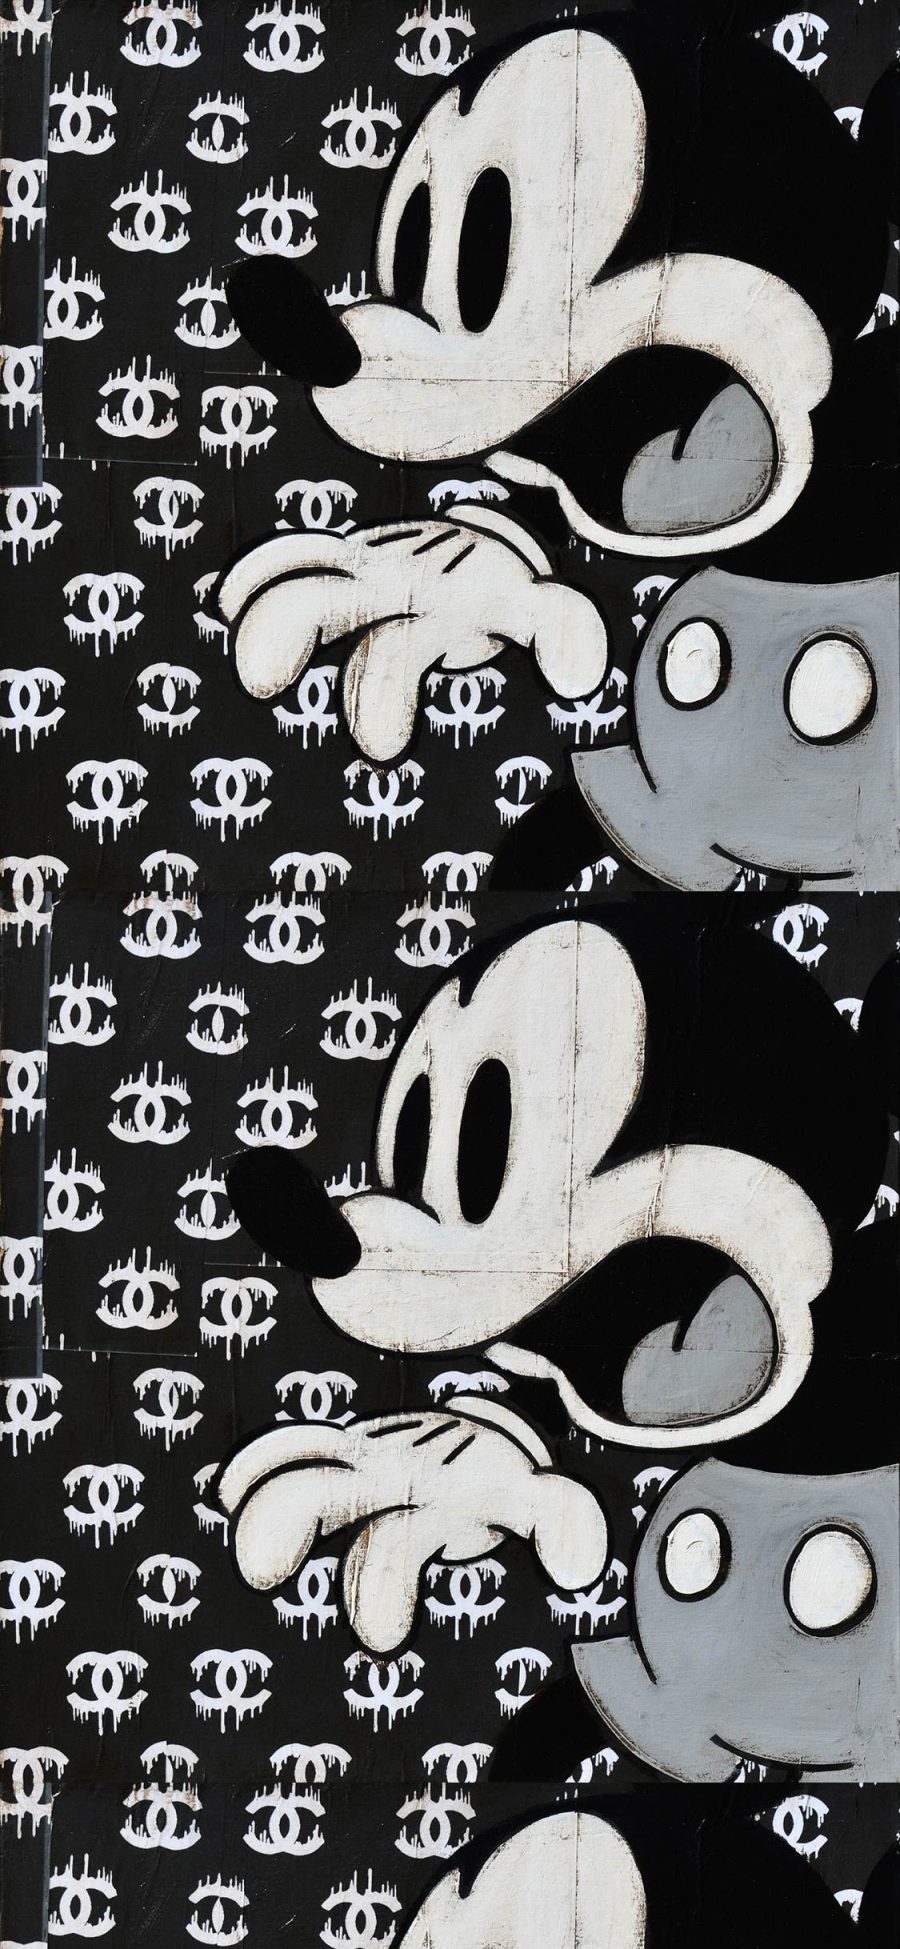 [2436×1125]卡通 迪士尼 米老鼠 香奈儿 logo 黑白 苹果手机动漫壁纸图片